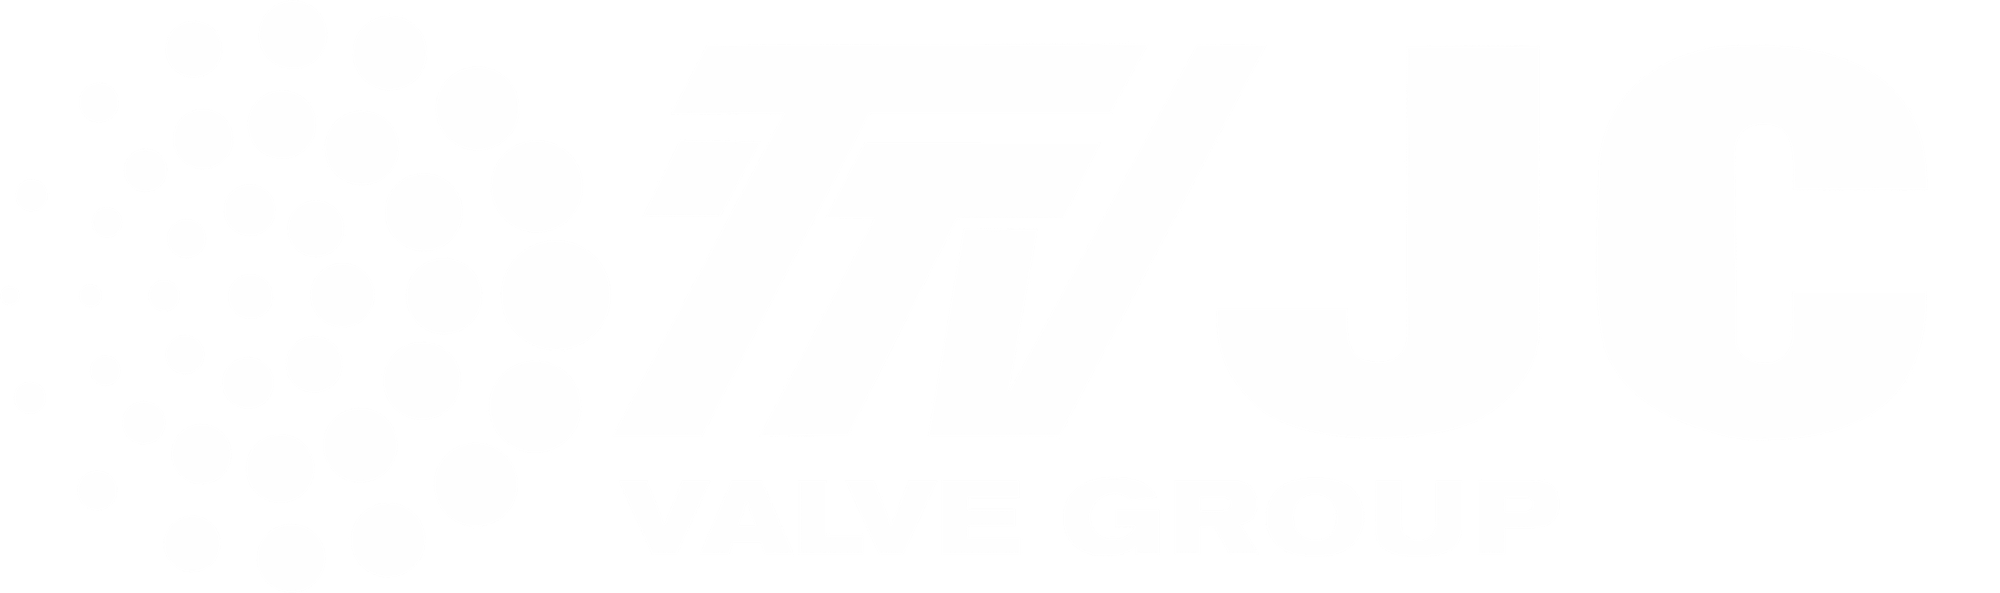 Logo TTV JC